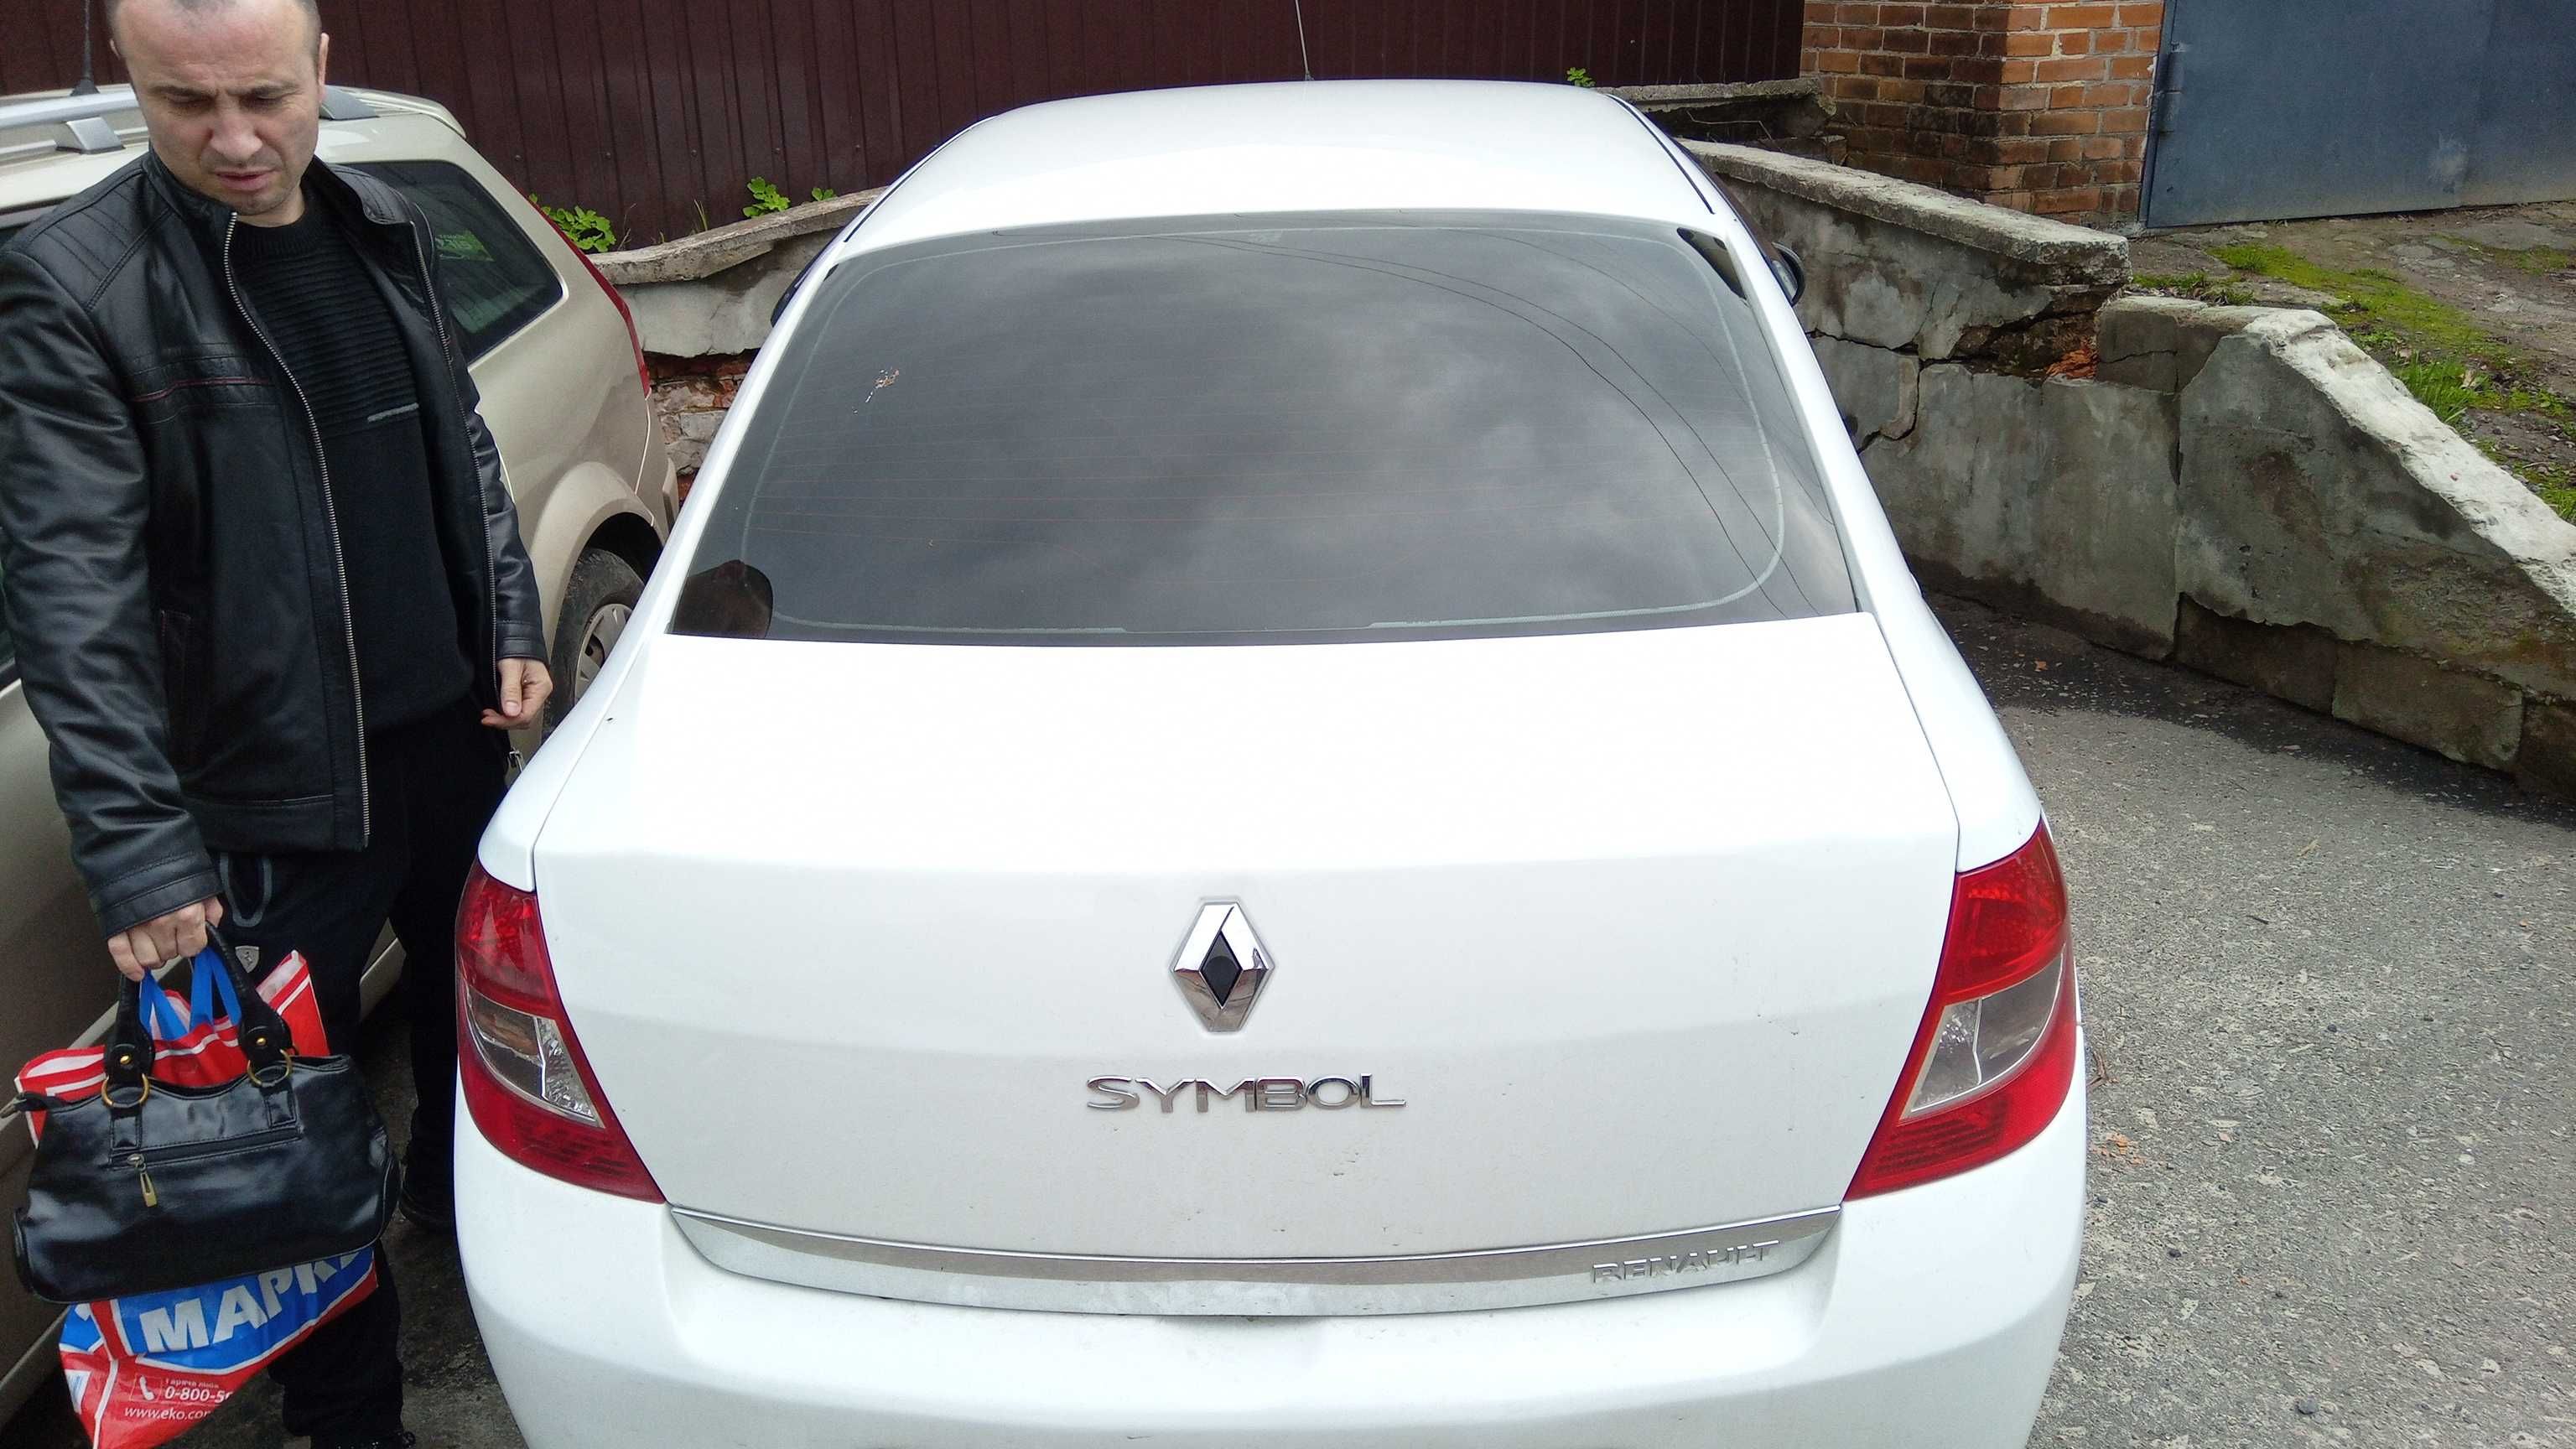 Авто машина Рено Сімбол симбол Renault Symbol 1.4 2010 газ бензин